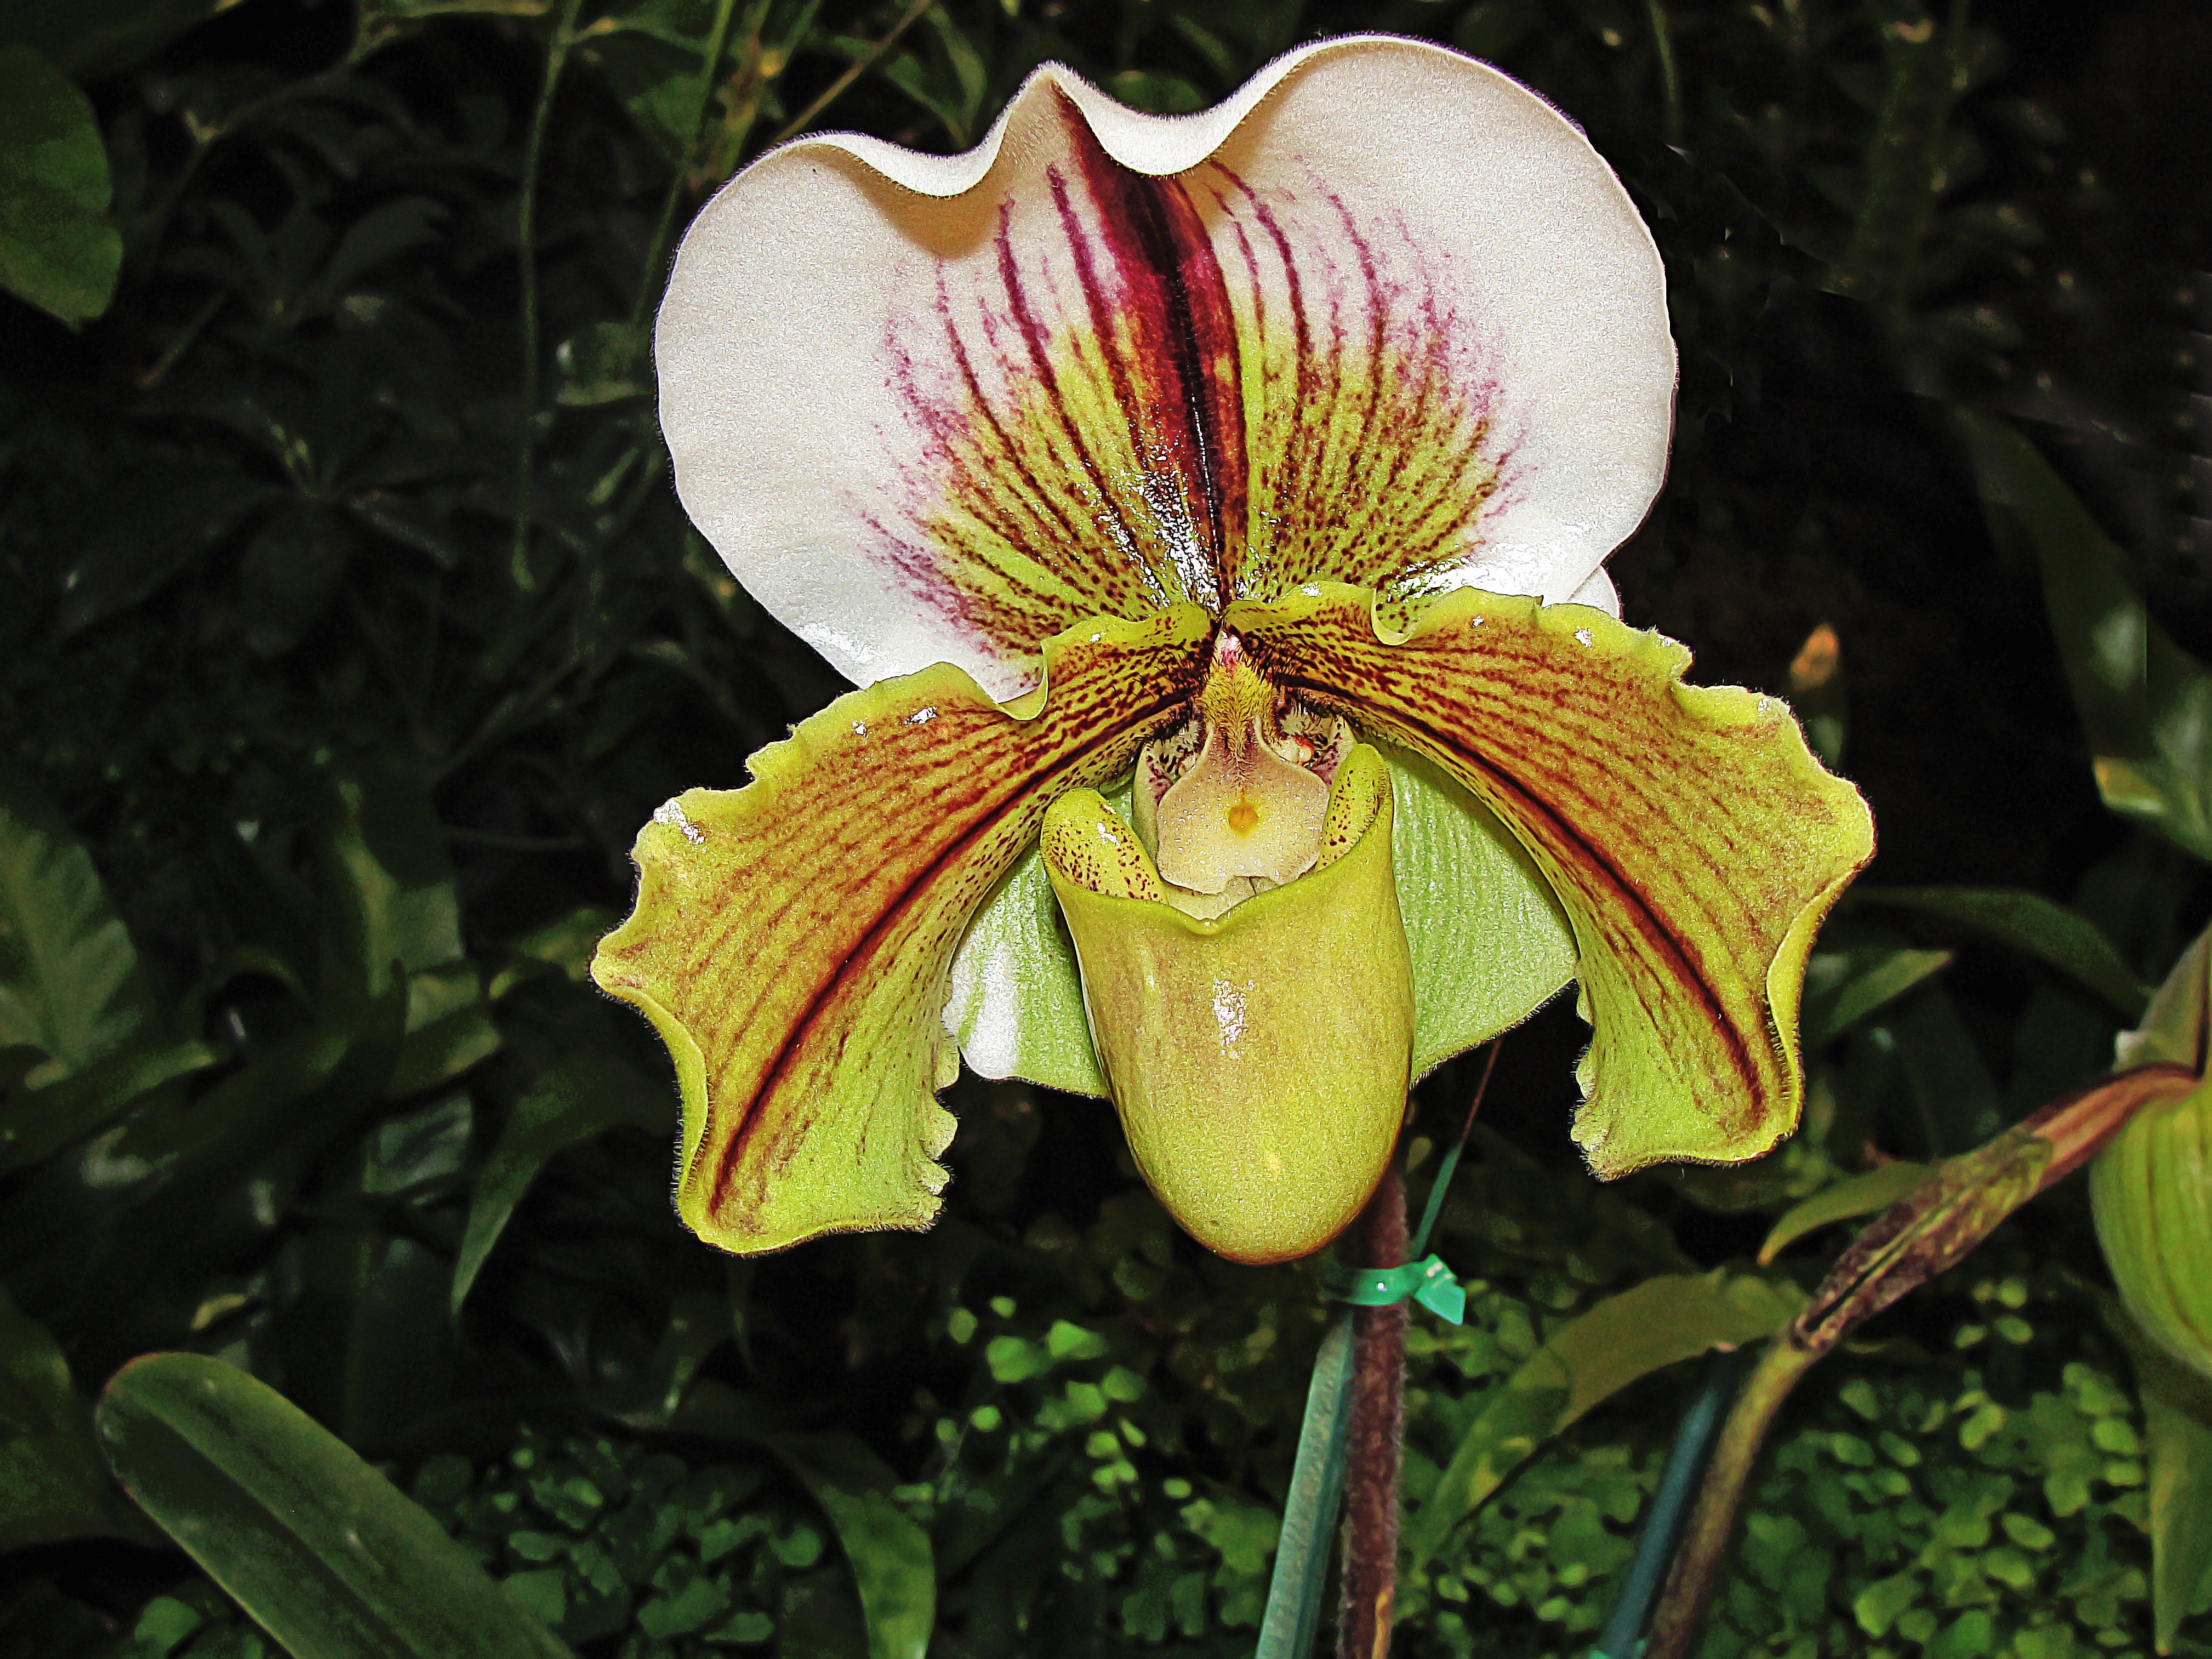 Slipper Orchid, Paphiopedilum Spp, flower, petal